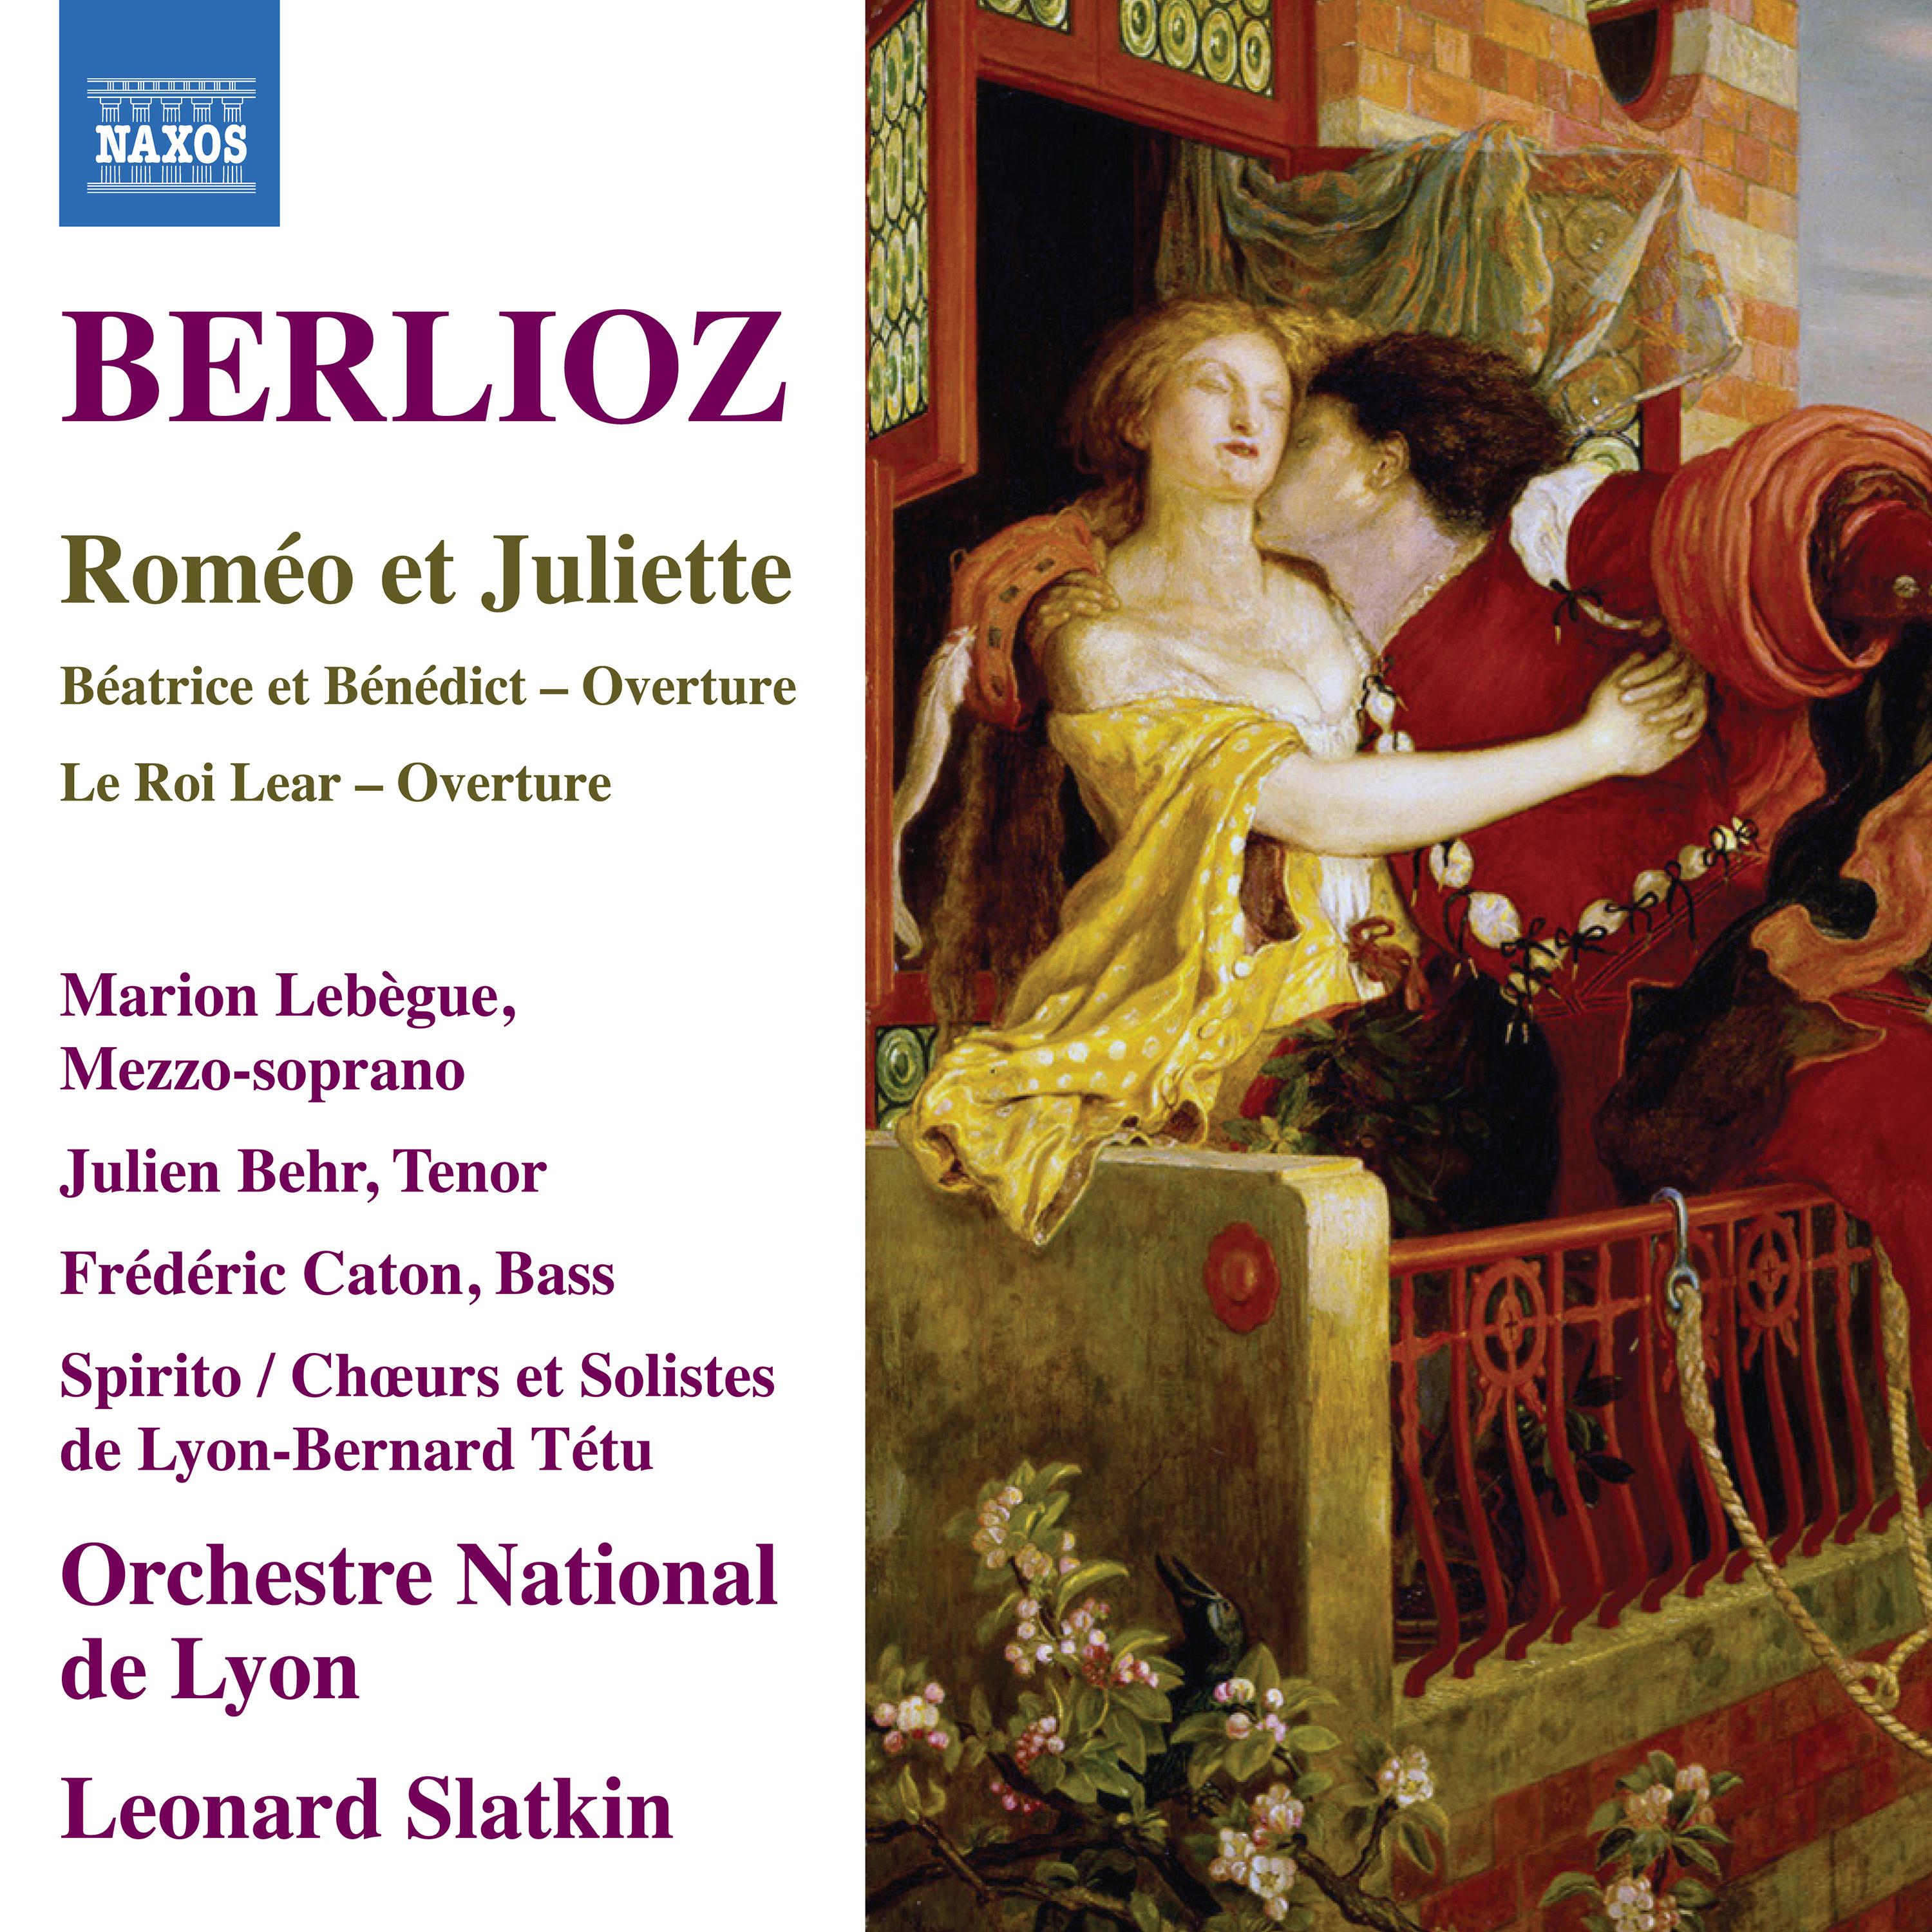 Rome o et Juliette, Op. 17: Part II: Rome o seul  Tristesse  Bruit lointain de bal et de concert  Grande F te chez Capulet